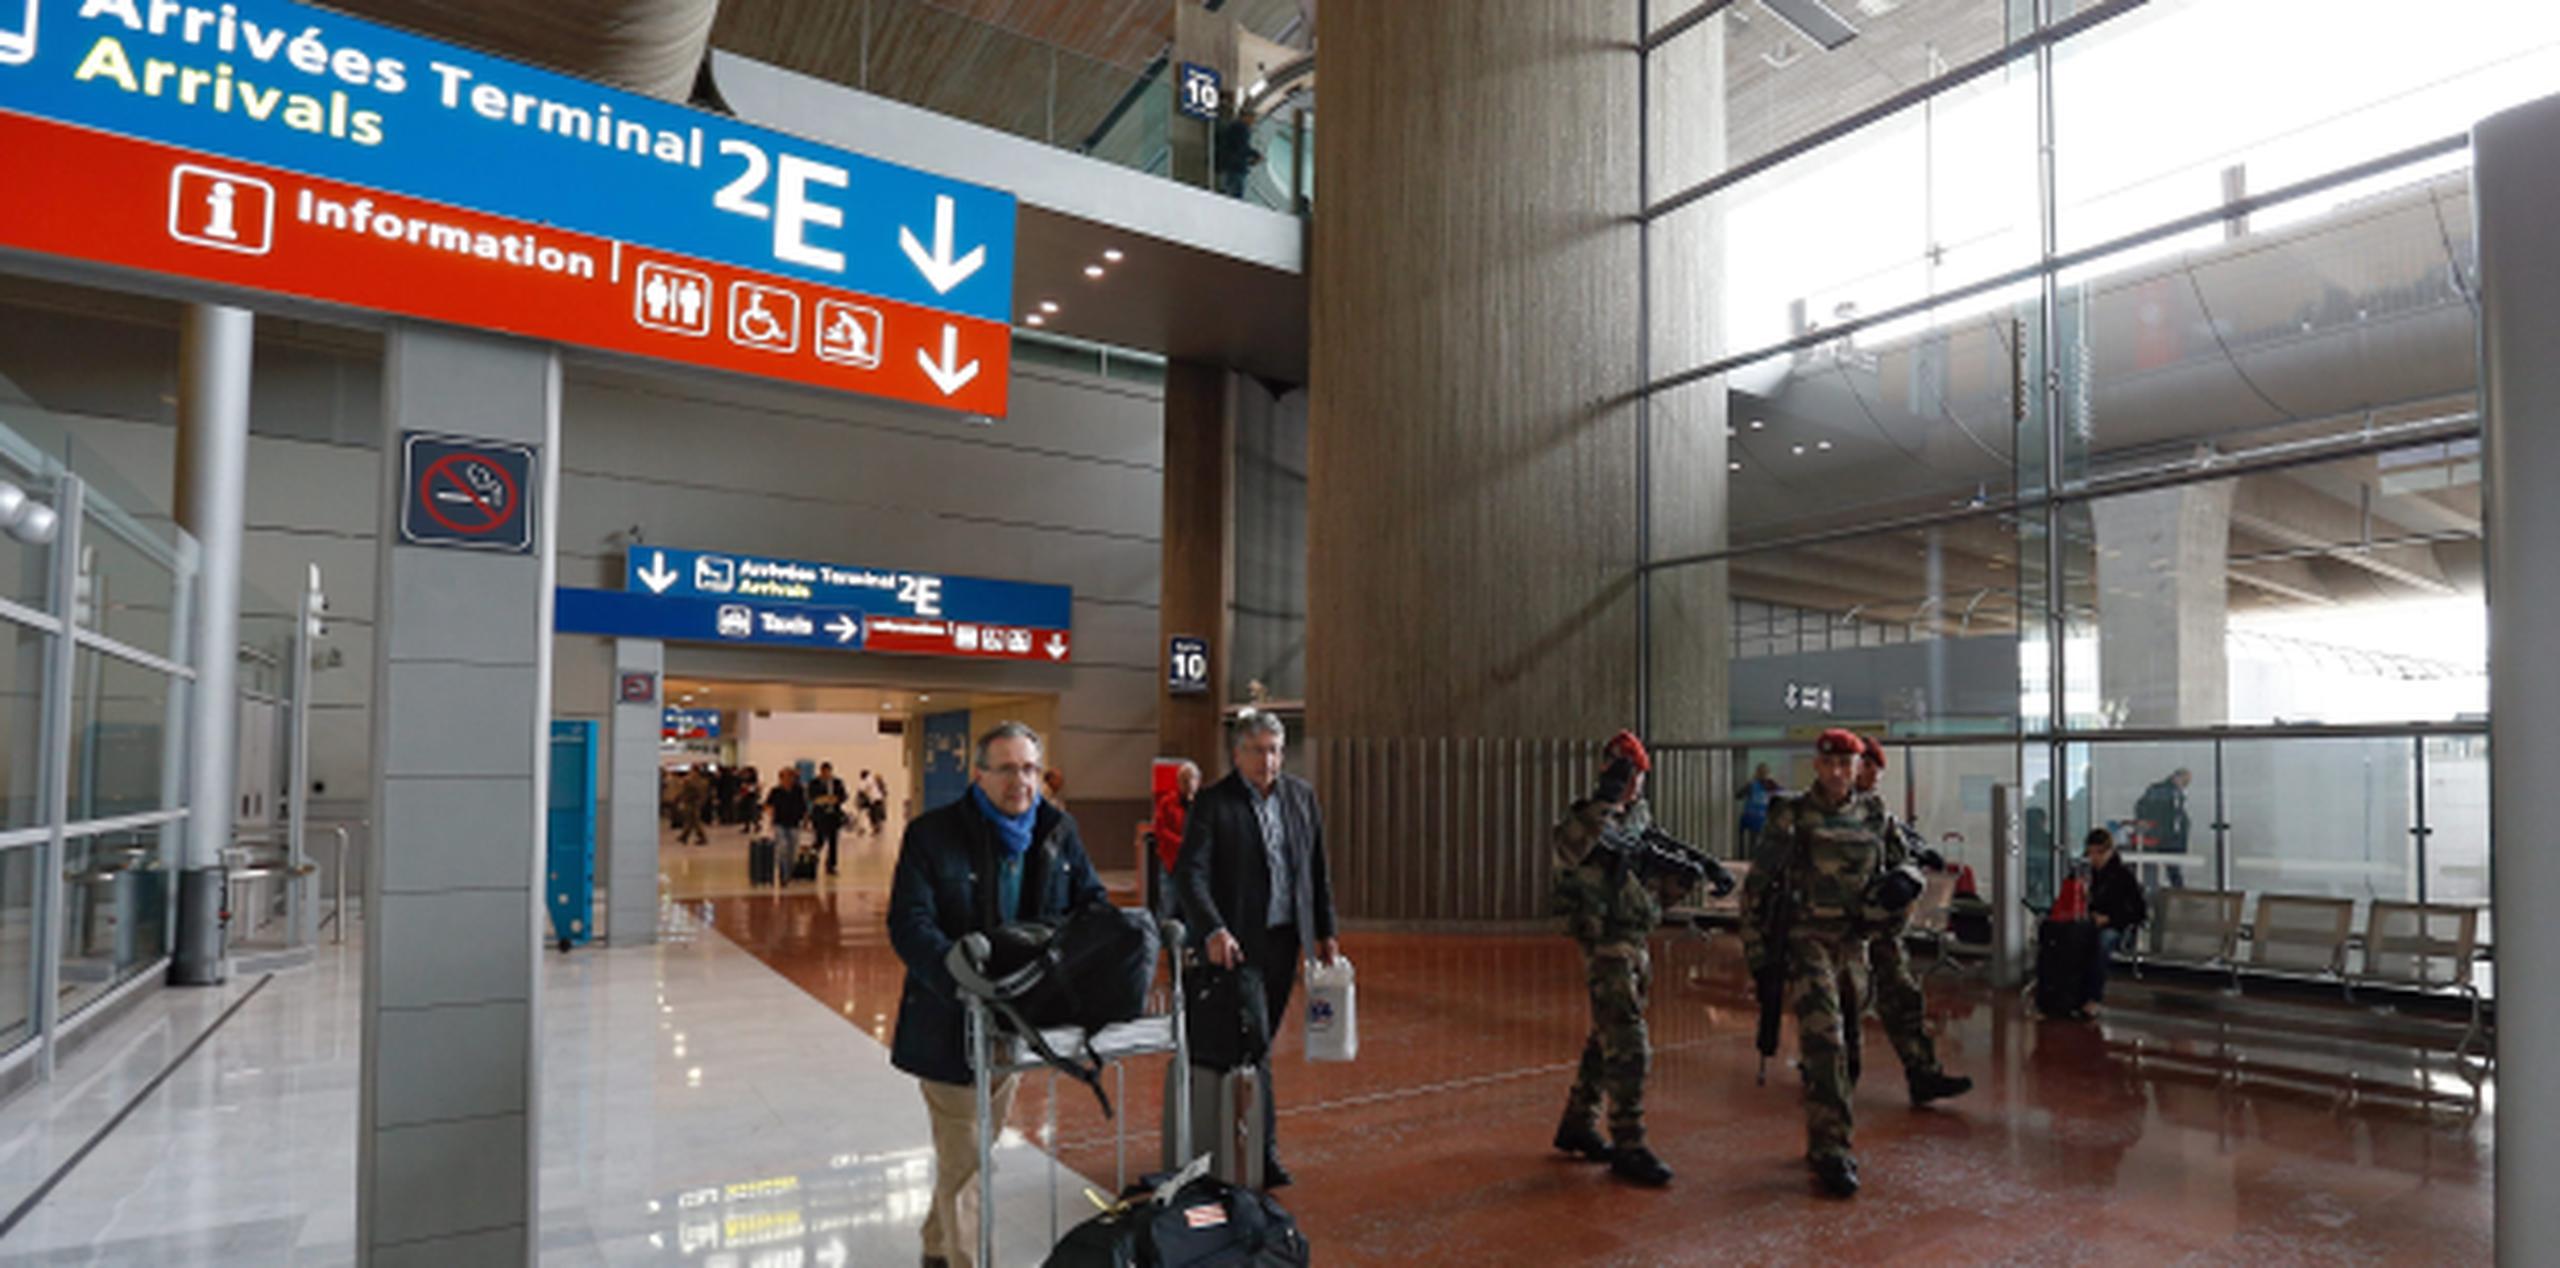 Las altas tensiones tras los ataques podían percibirse en aeropuertos europeos el fin de semana. (EFE/EPA/Laurent Dubrule)